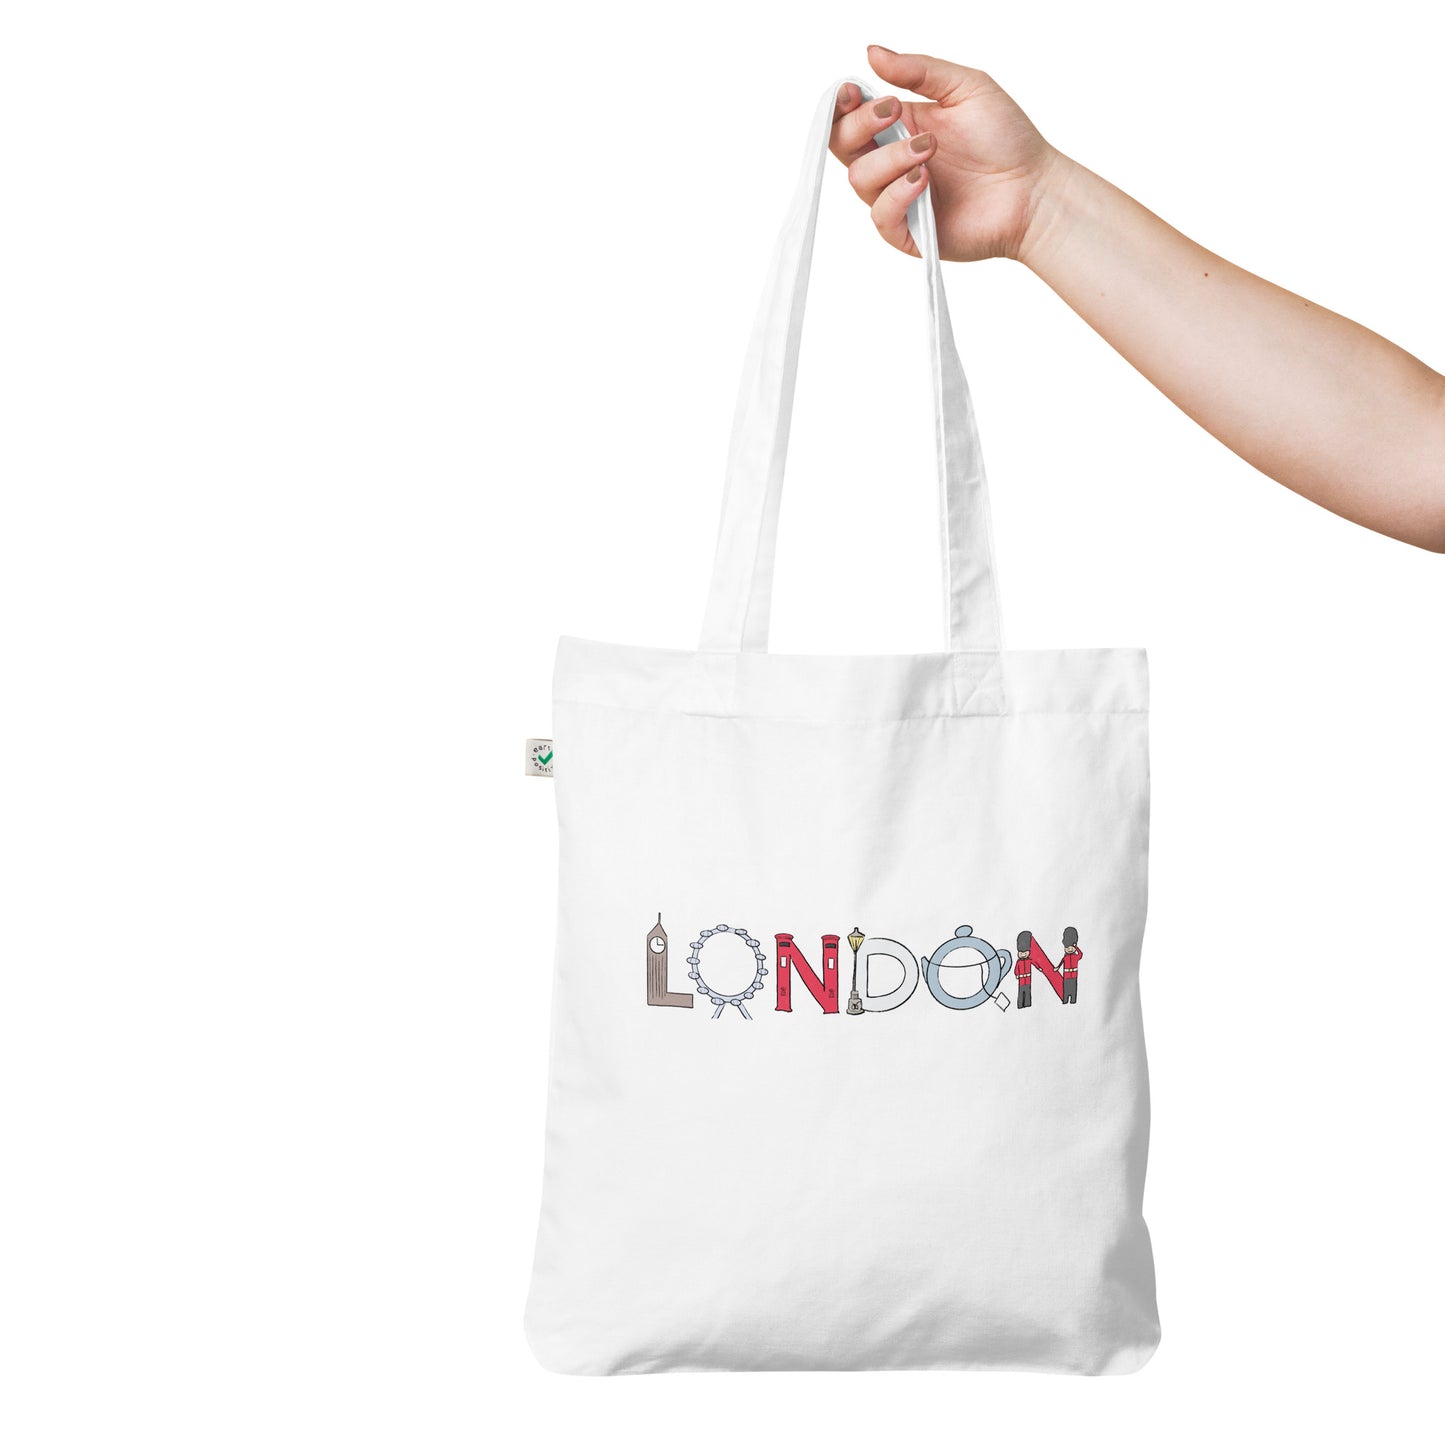 London Landmarks Organic Cotton Tote Bag